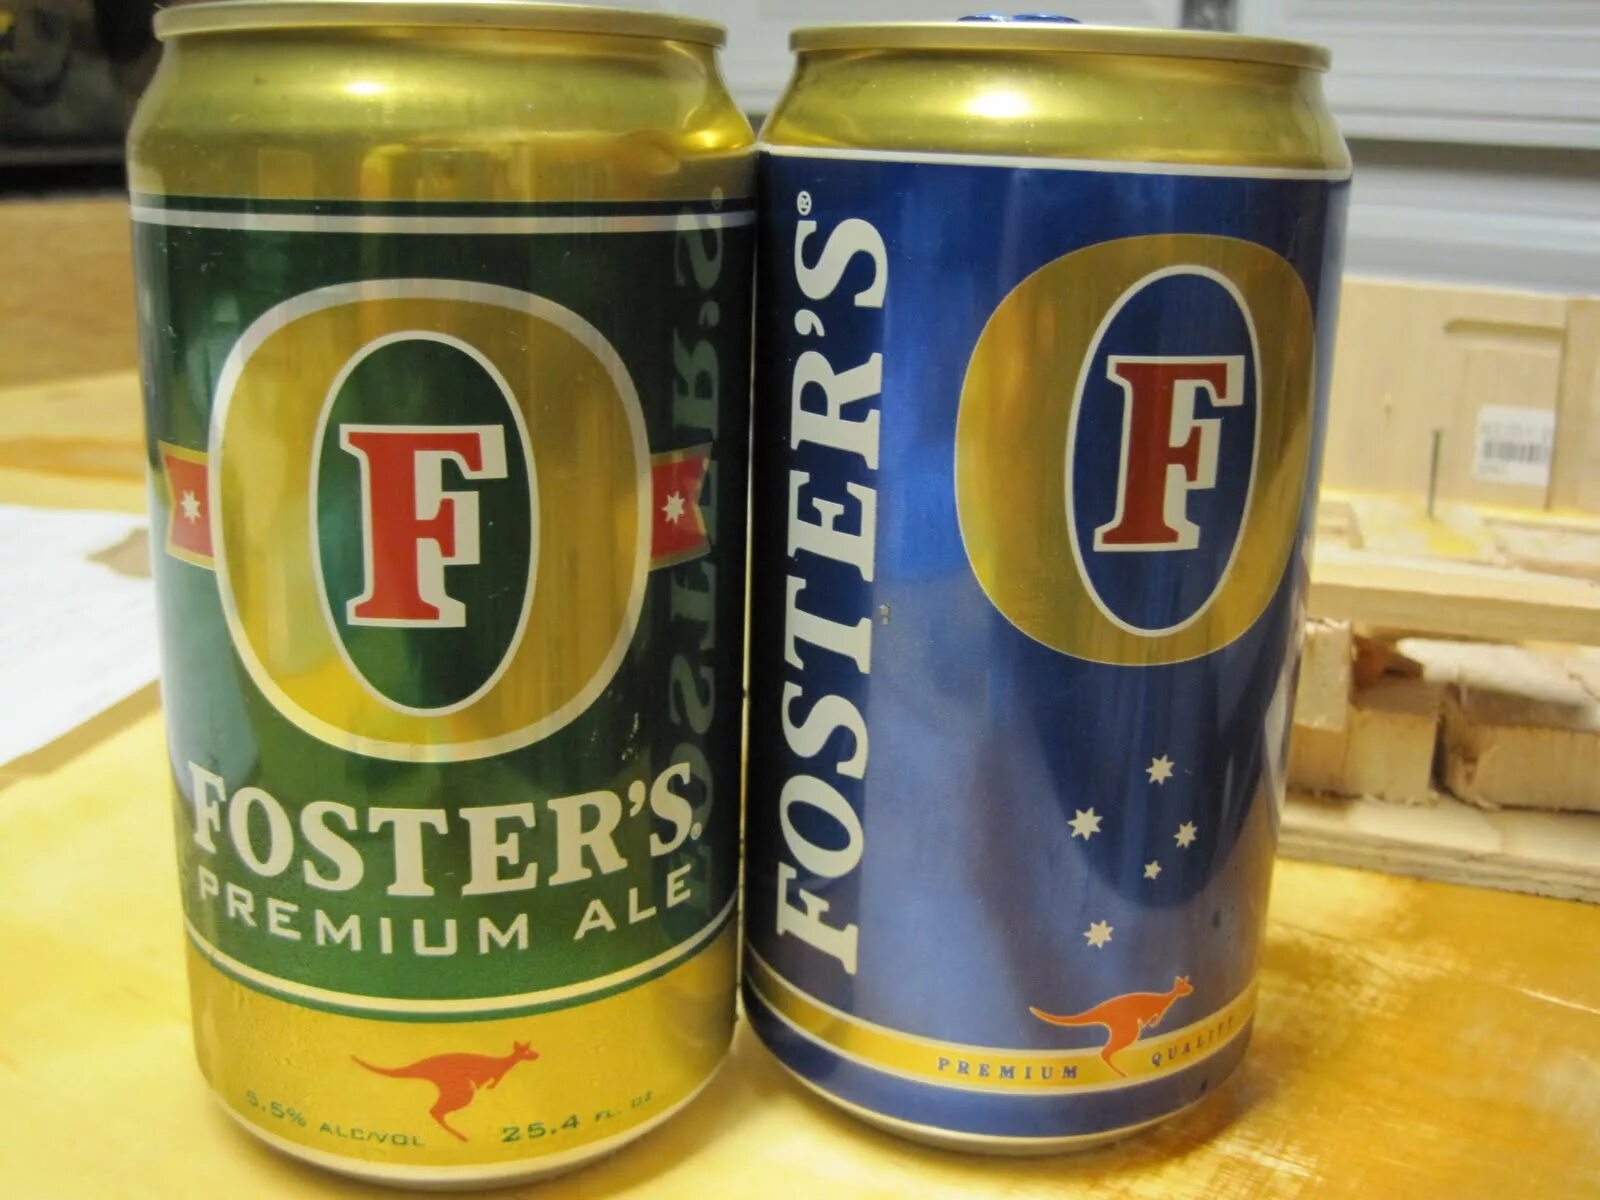 Пово 5 фото. Фостер пиво. Австралийское пиво Фостер. Fosters пиво 2004. Пиво Fosters в России.